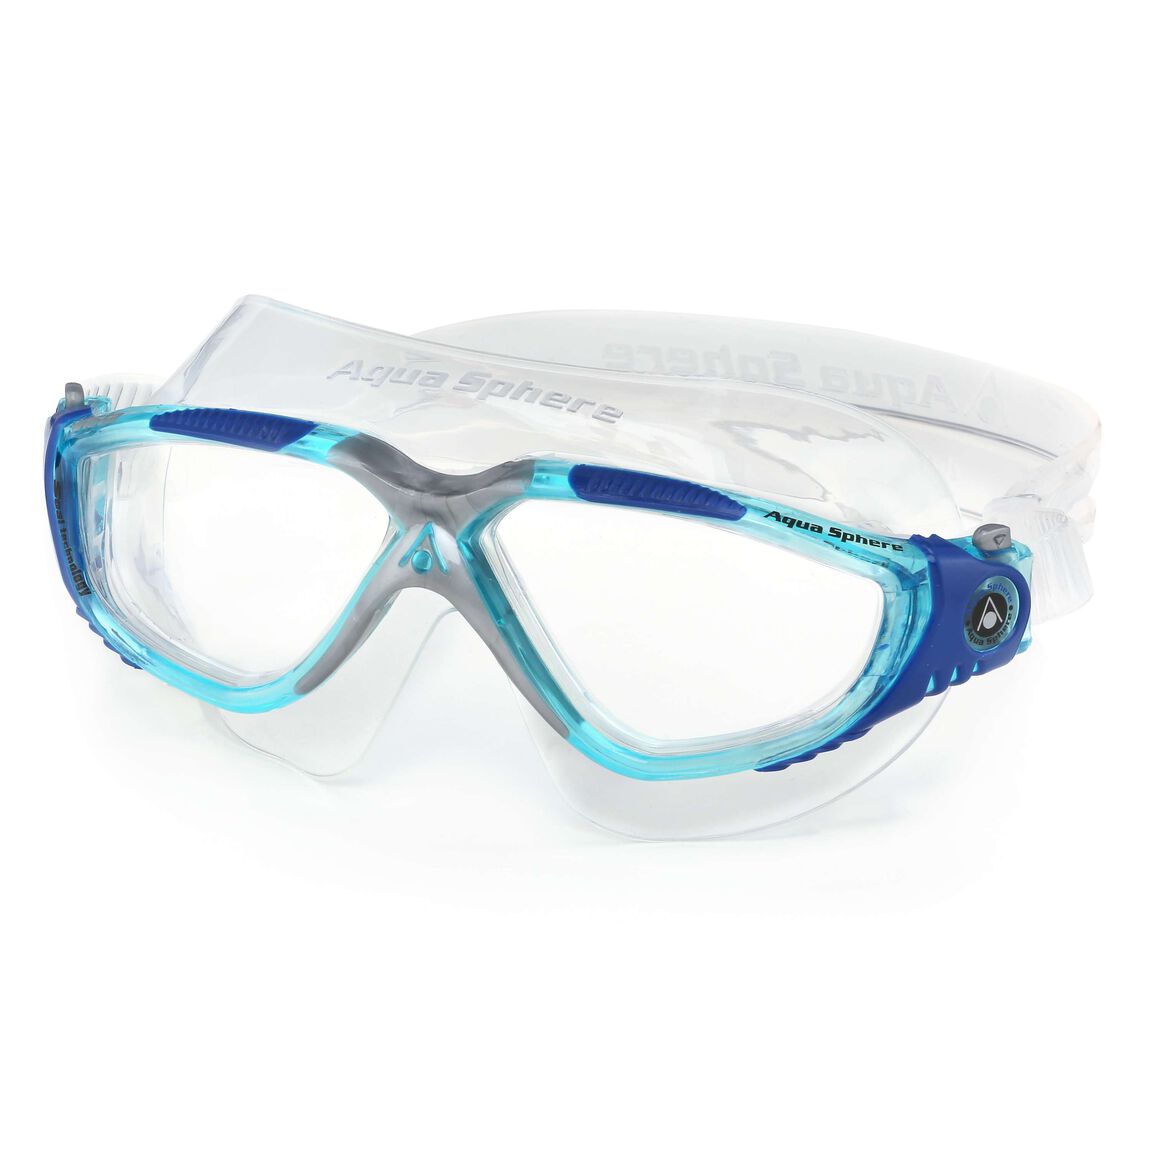 Aquasphere Vista Swim Mask - Turquoise/Blue